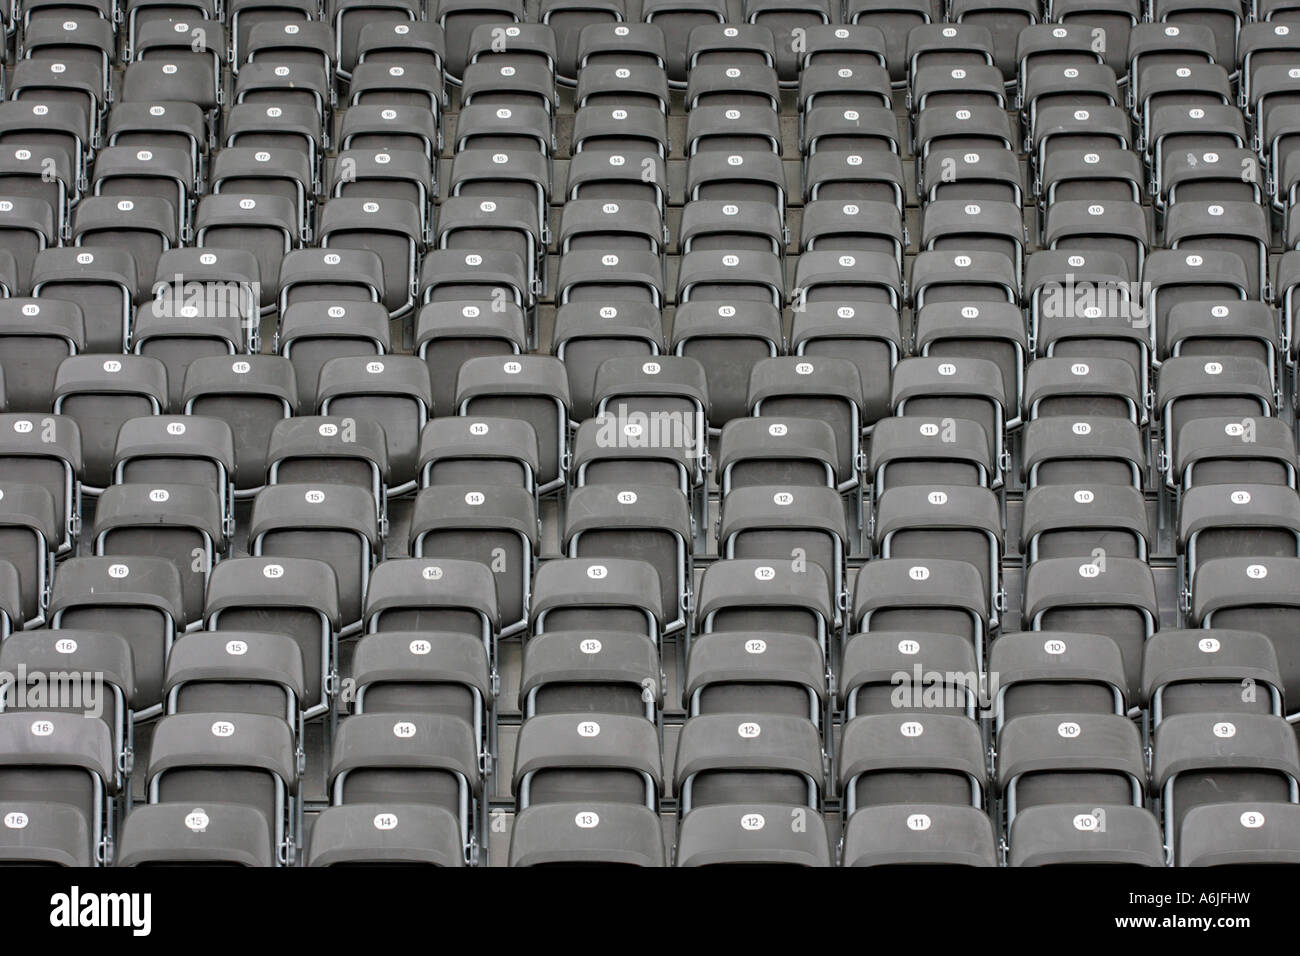 Empty seats at a stadium, Berlin, Germany Stock Photo